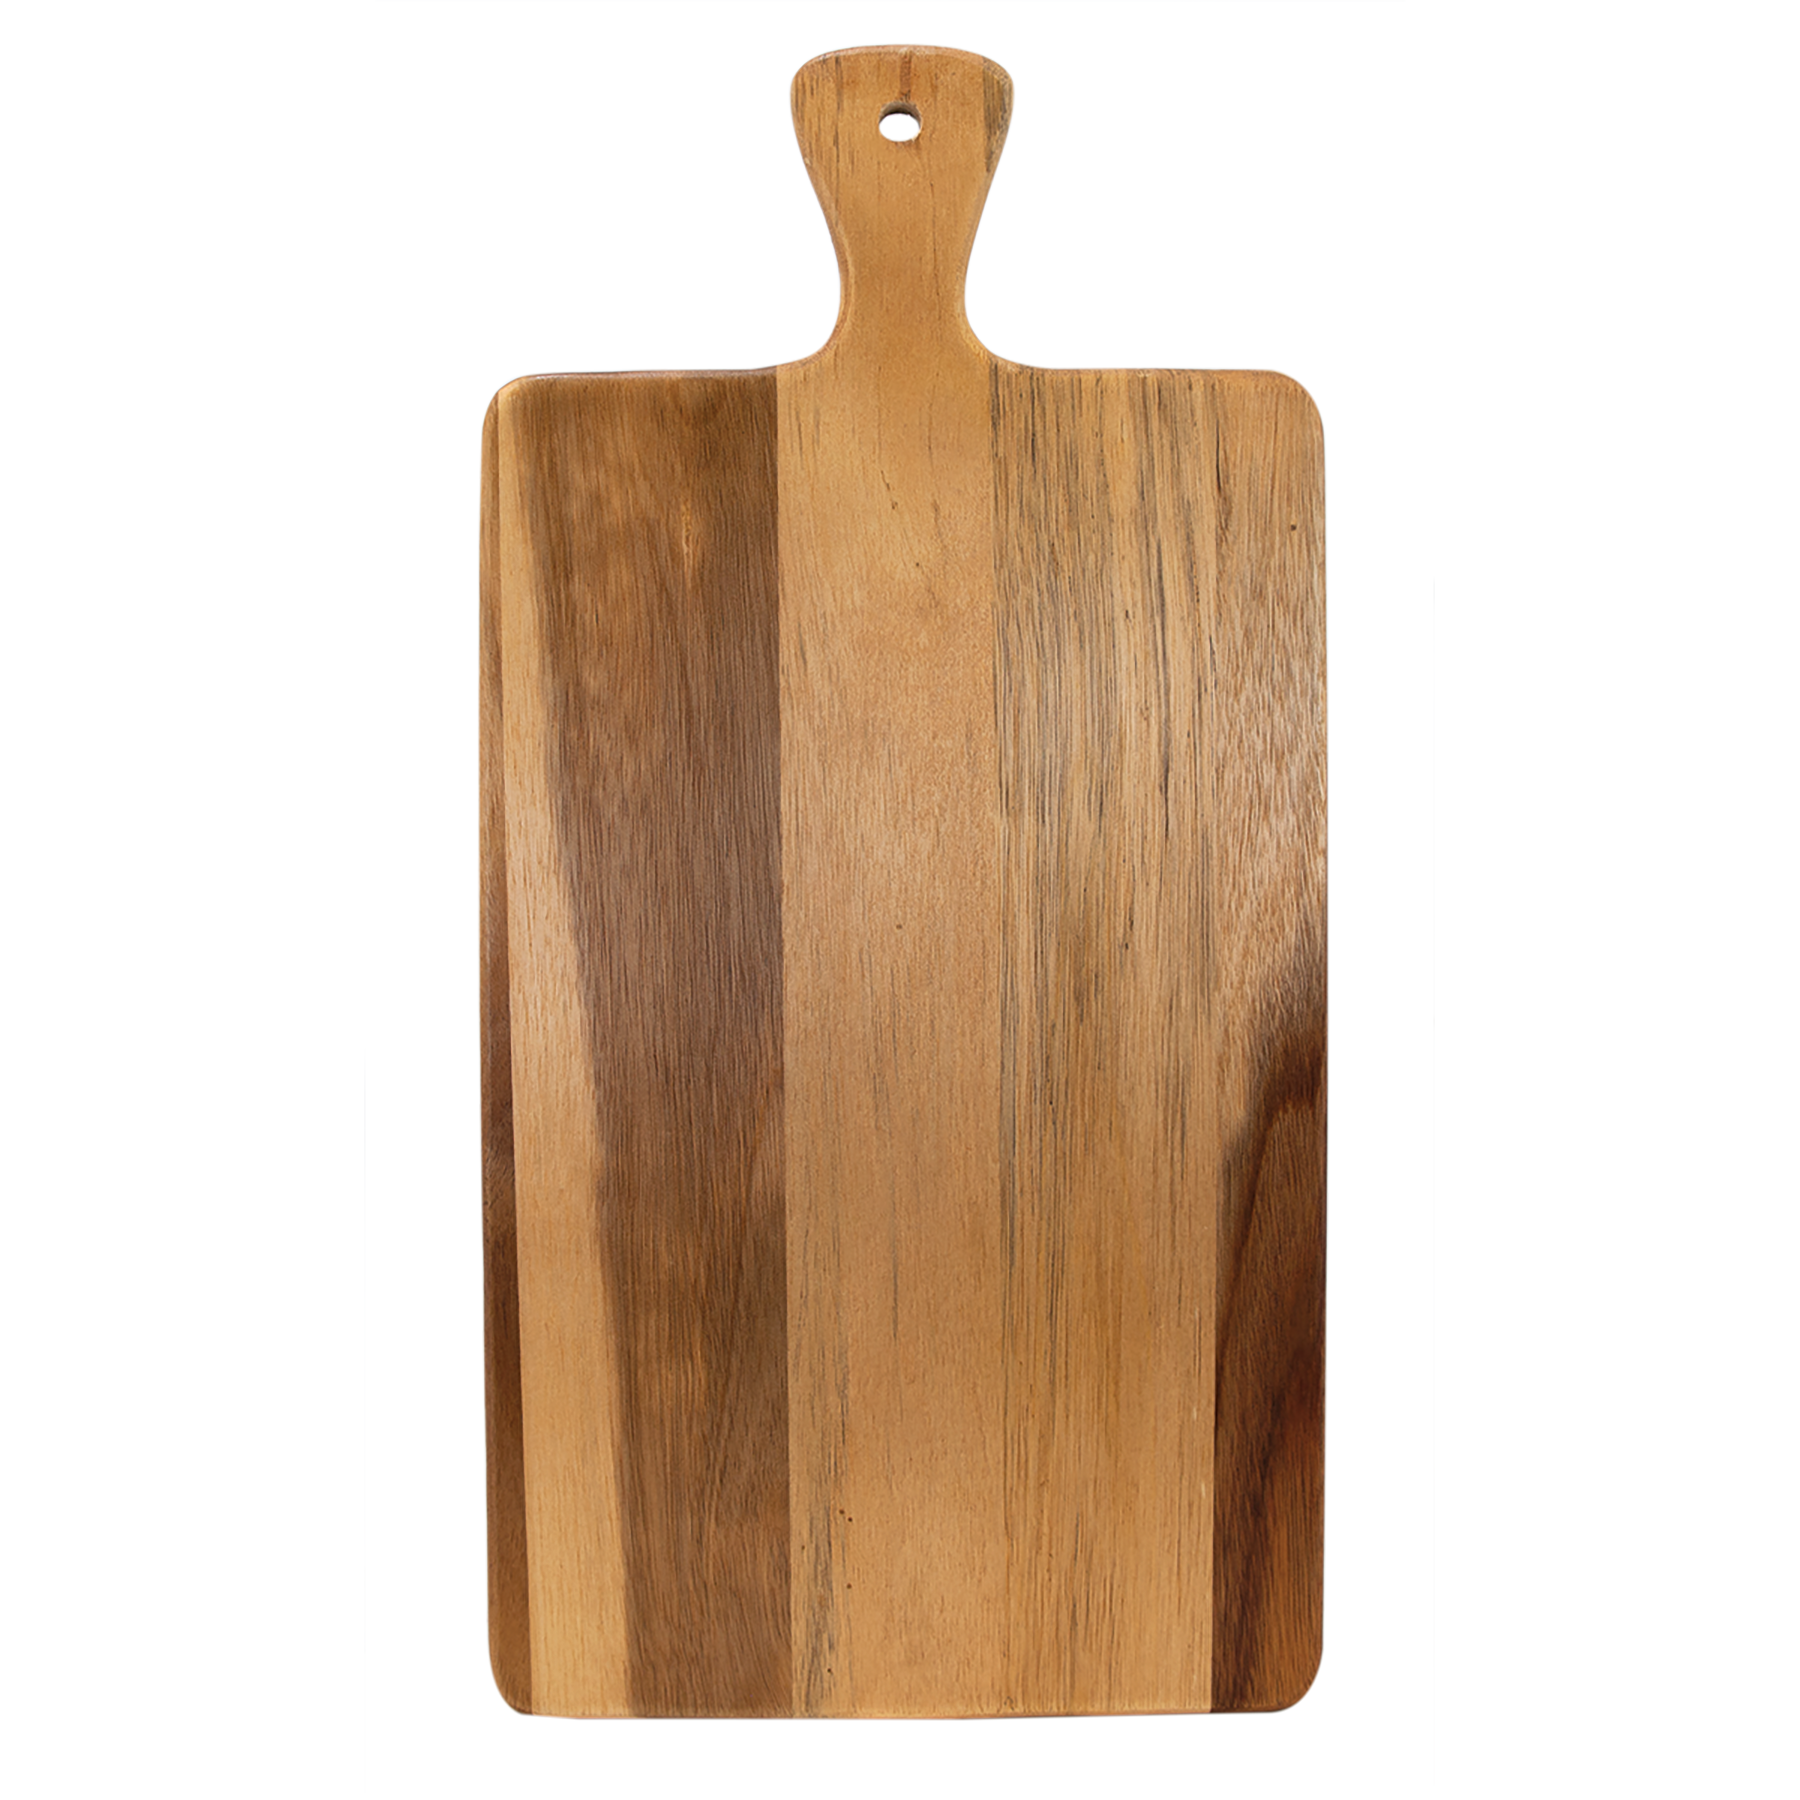 16" x 7 3/4" Acacia Wood/Slate Cutting Board